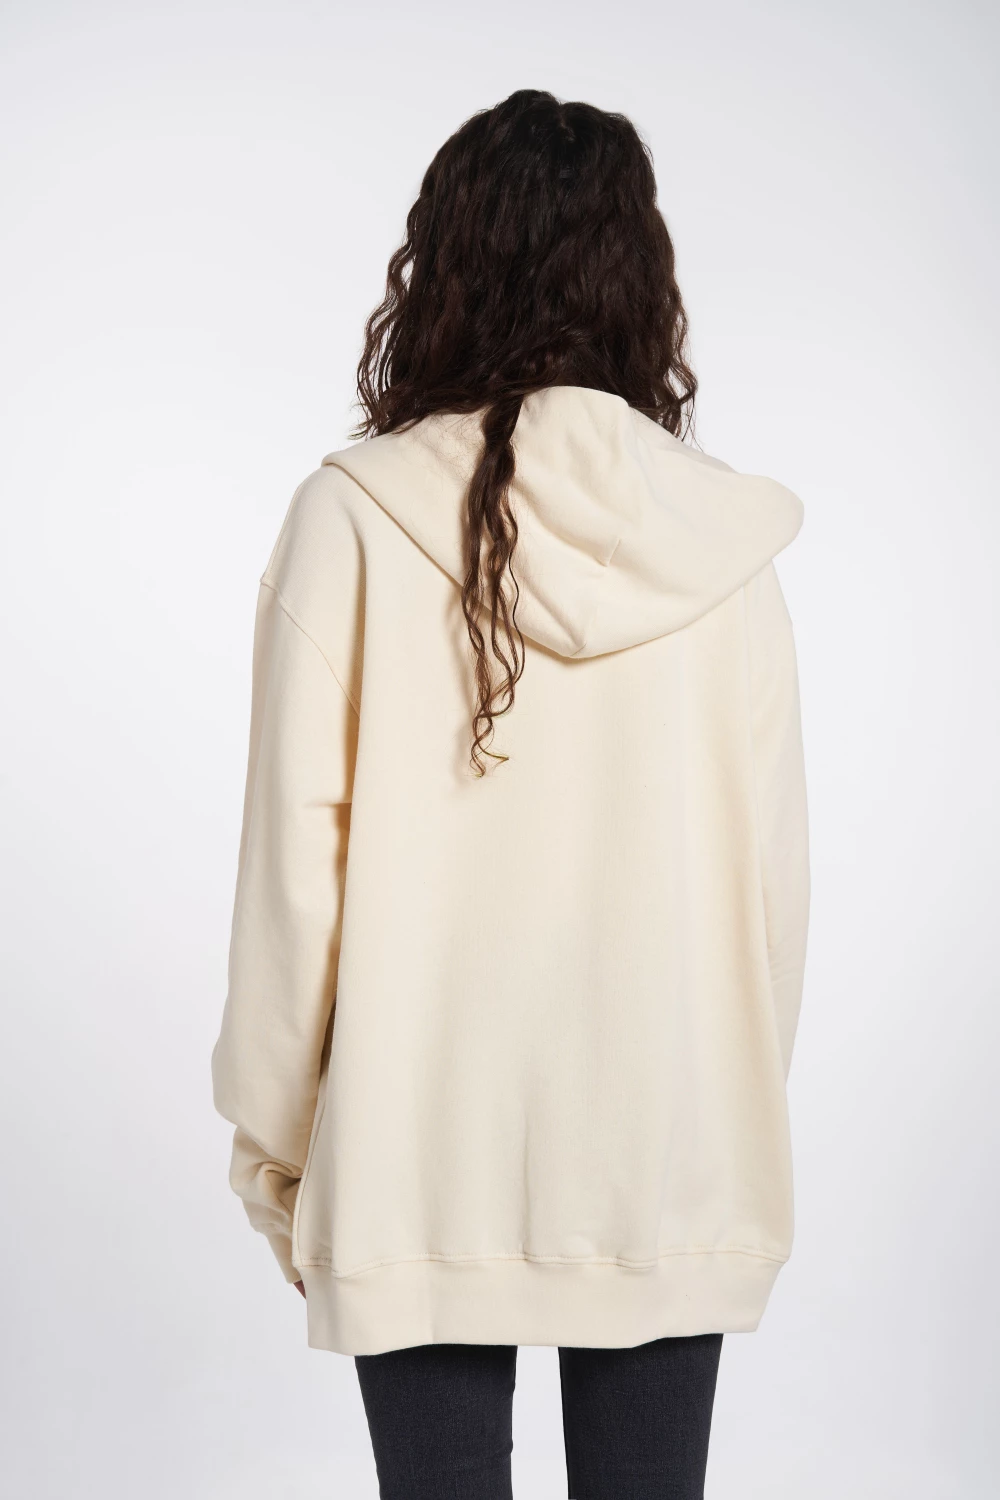 zip-up hoodie in vanilla color